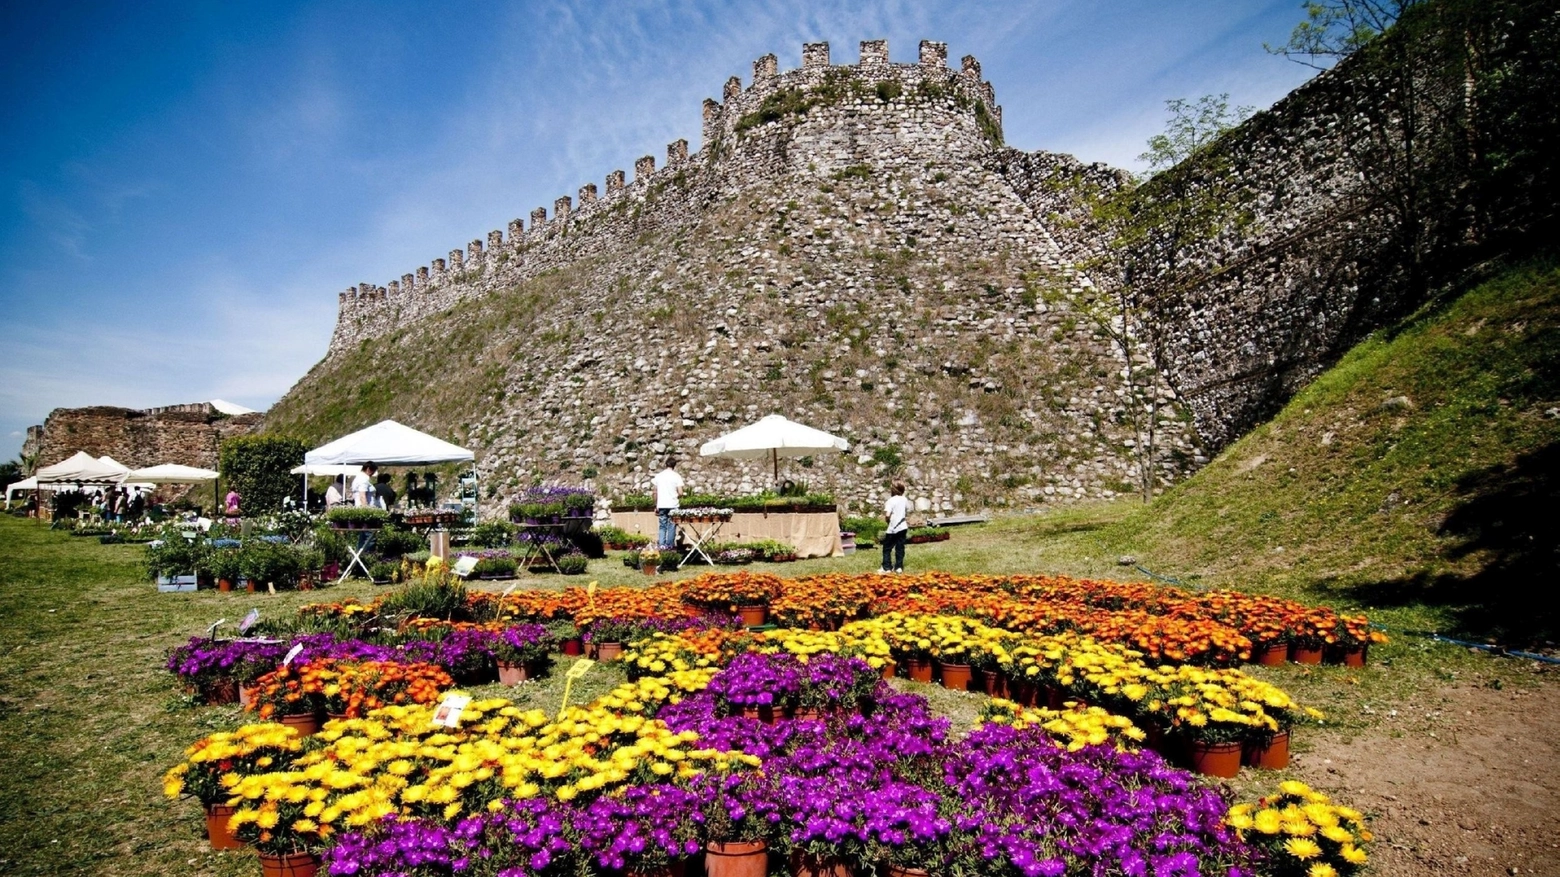 Dal 28 al 30 maggio torna l'appuntamento con la mostra mercato di fiori e piante rare nella quattrocentesca Rocca di Lonato del Garda